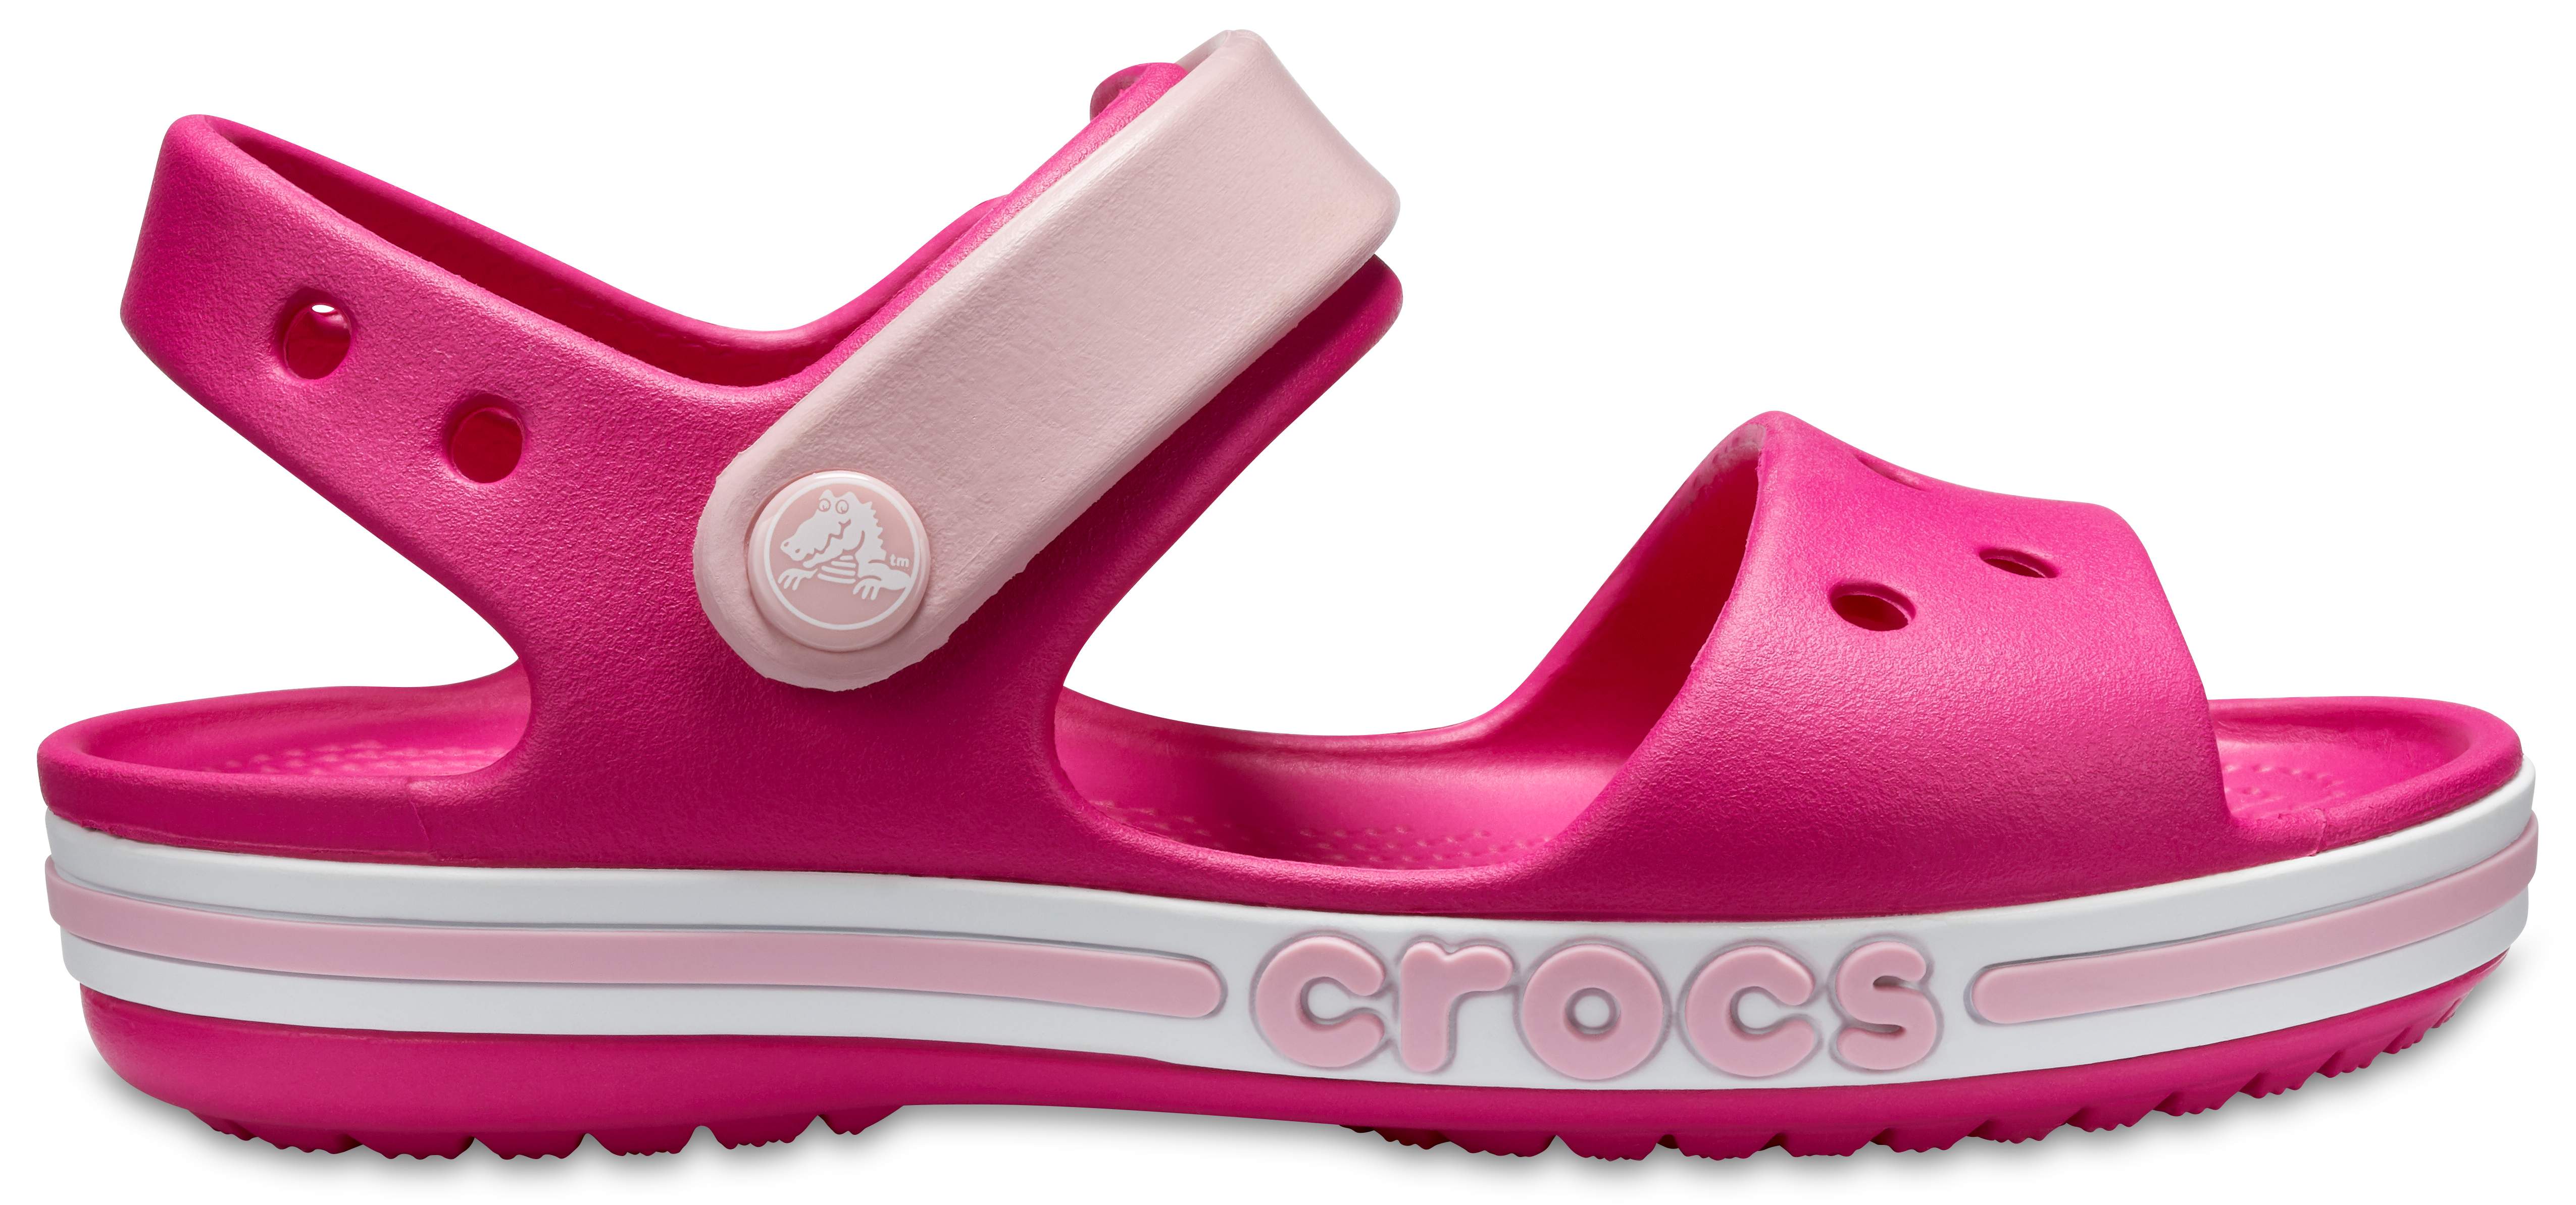 crocs boys sandals